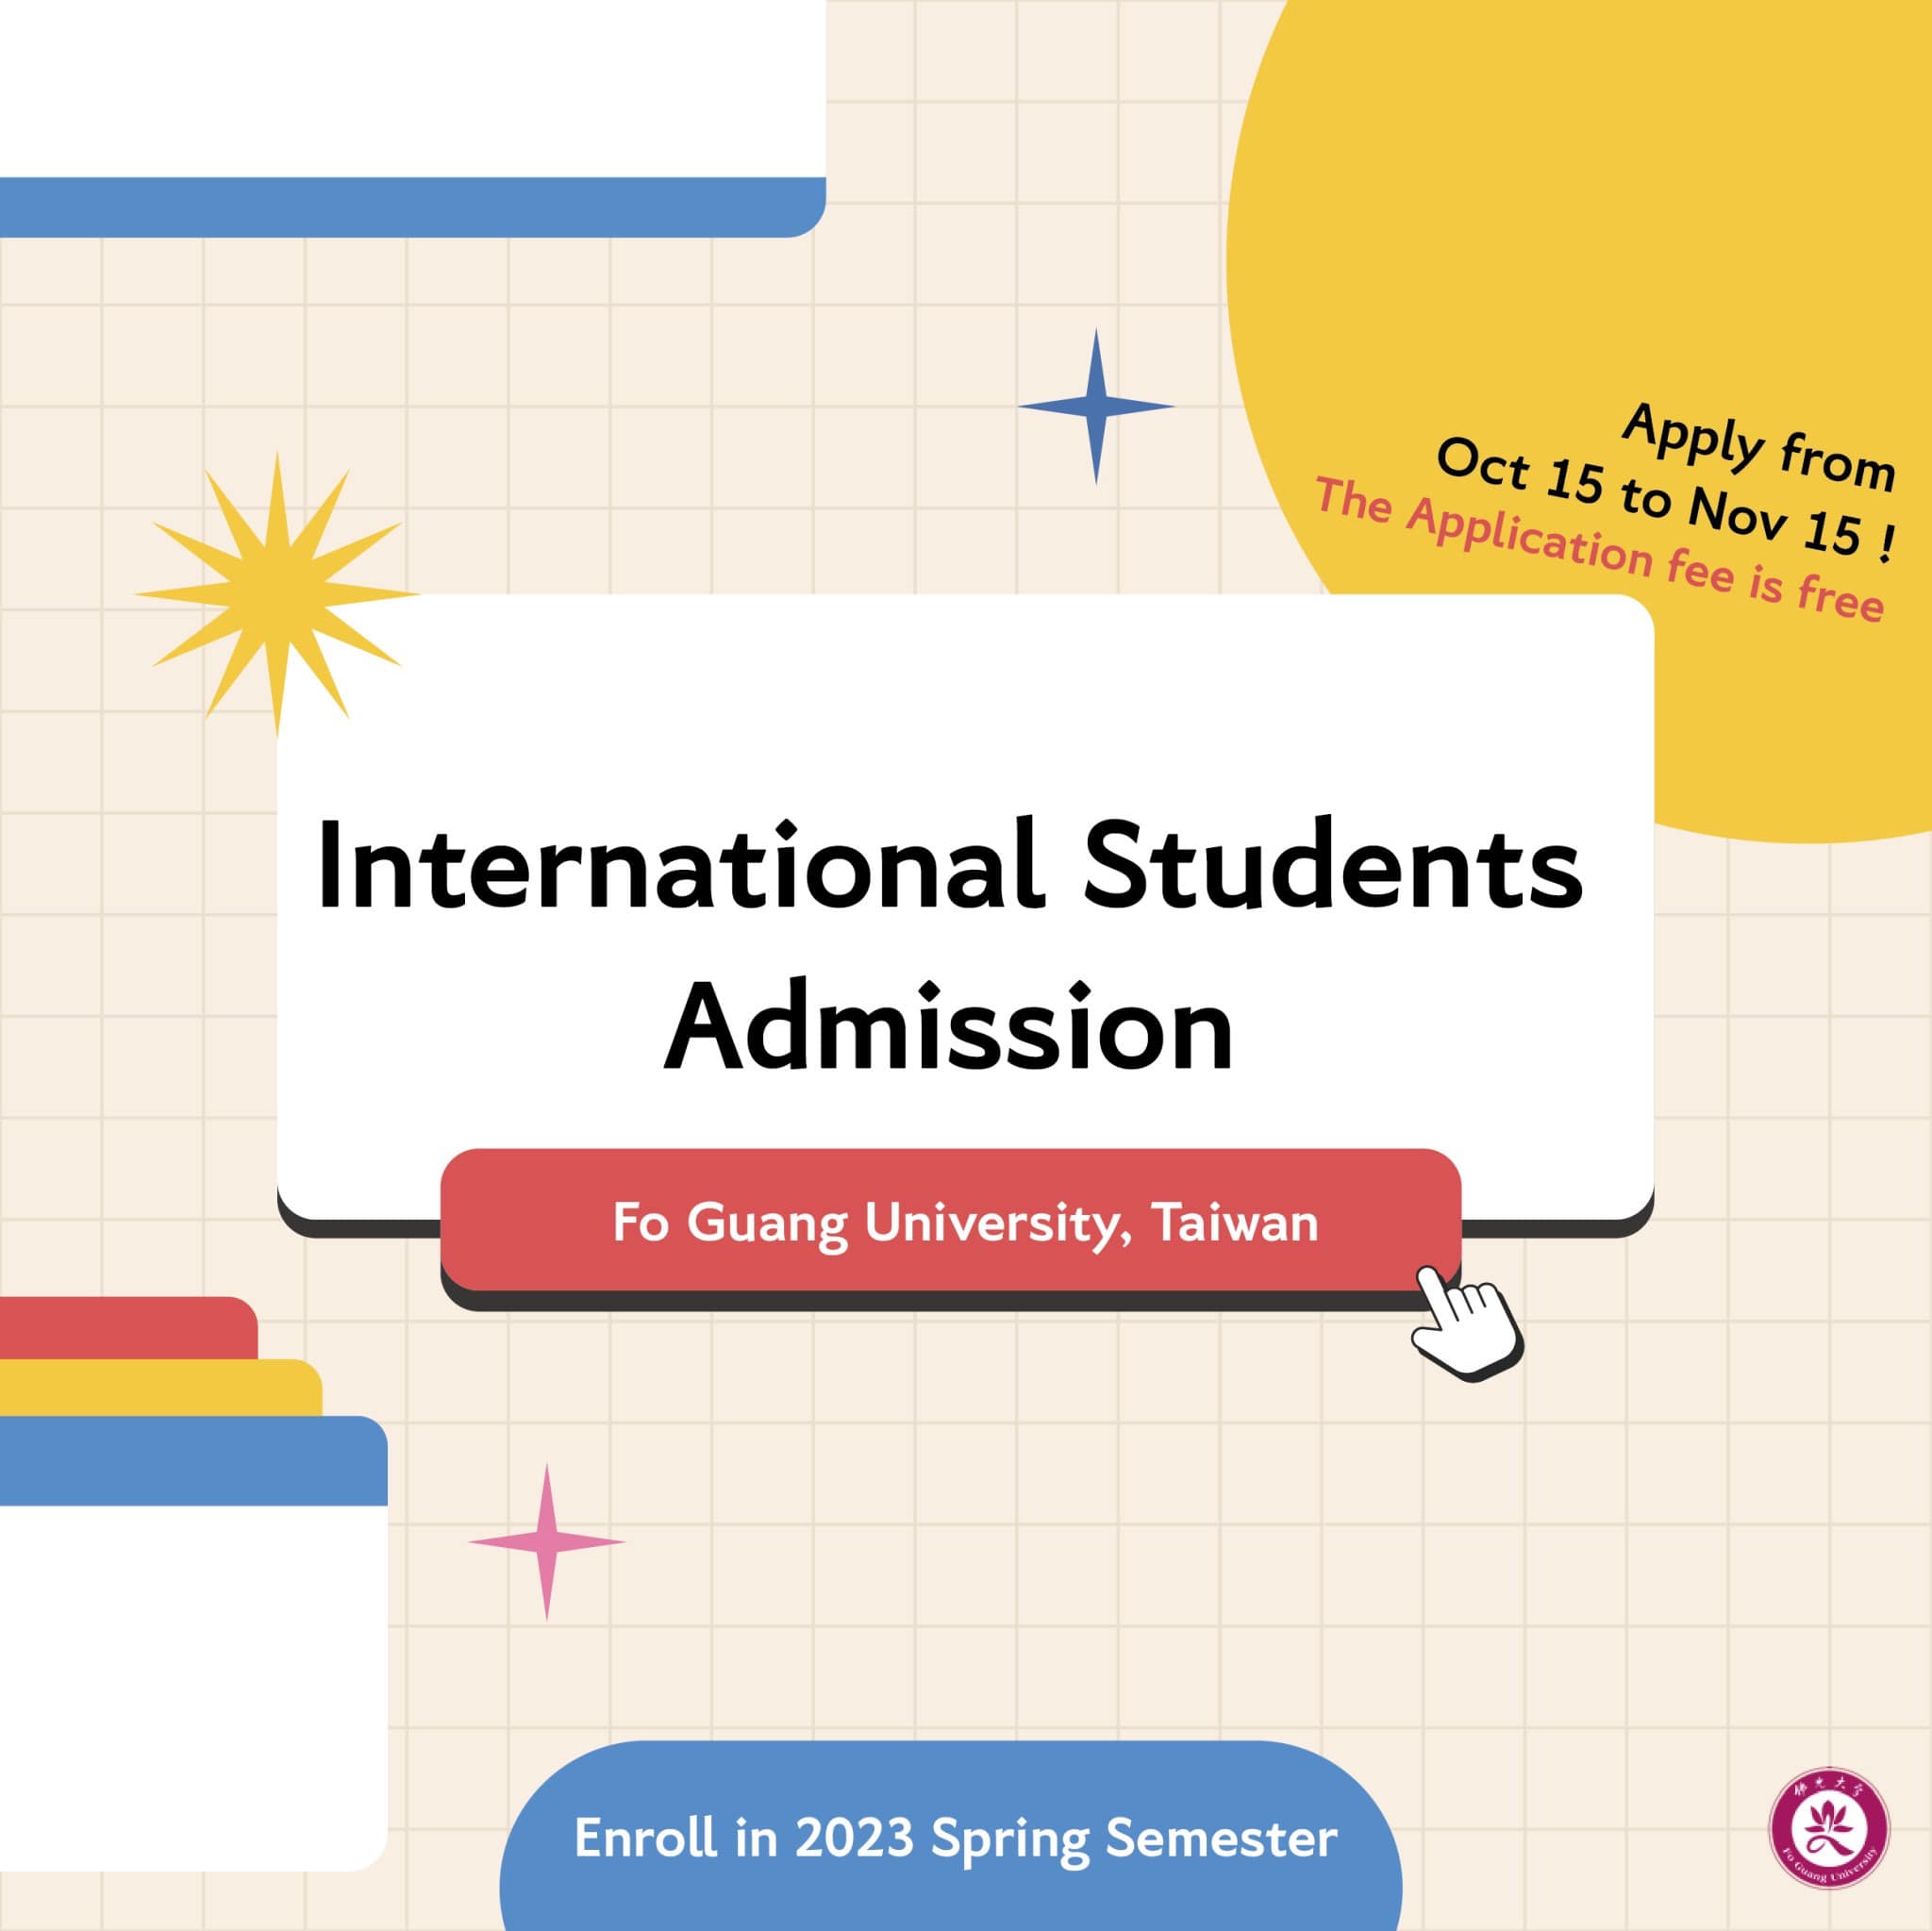 【20.10.2565】ข้อมูลการรับนักศึกษาต่างชาติเทอม Spring ของทาง Fo Guang University